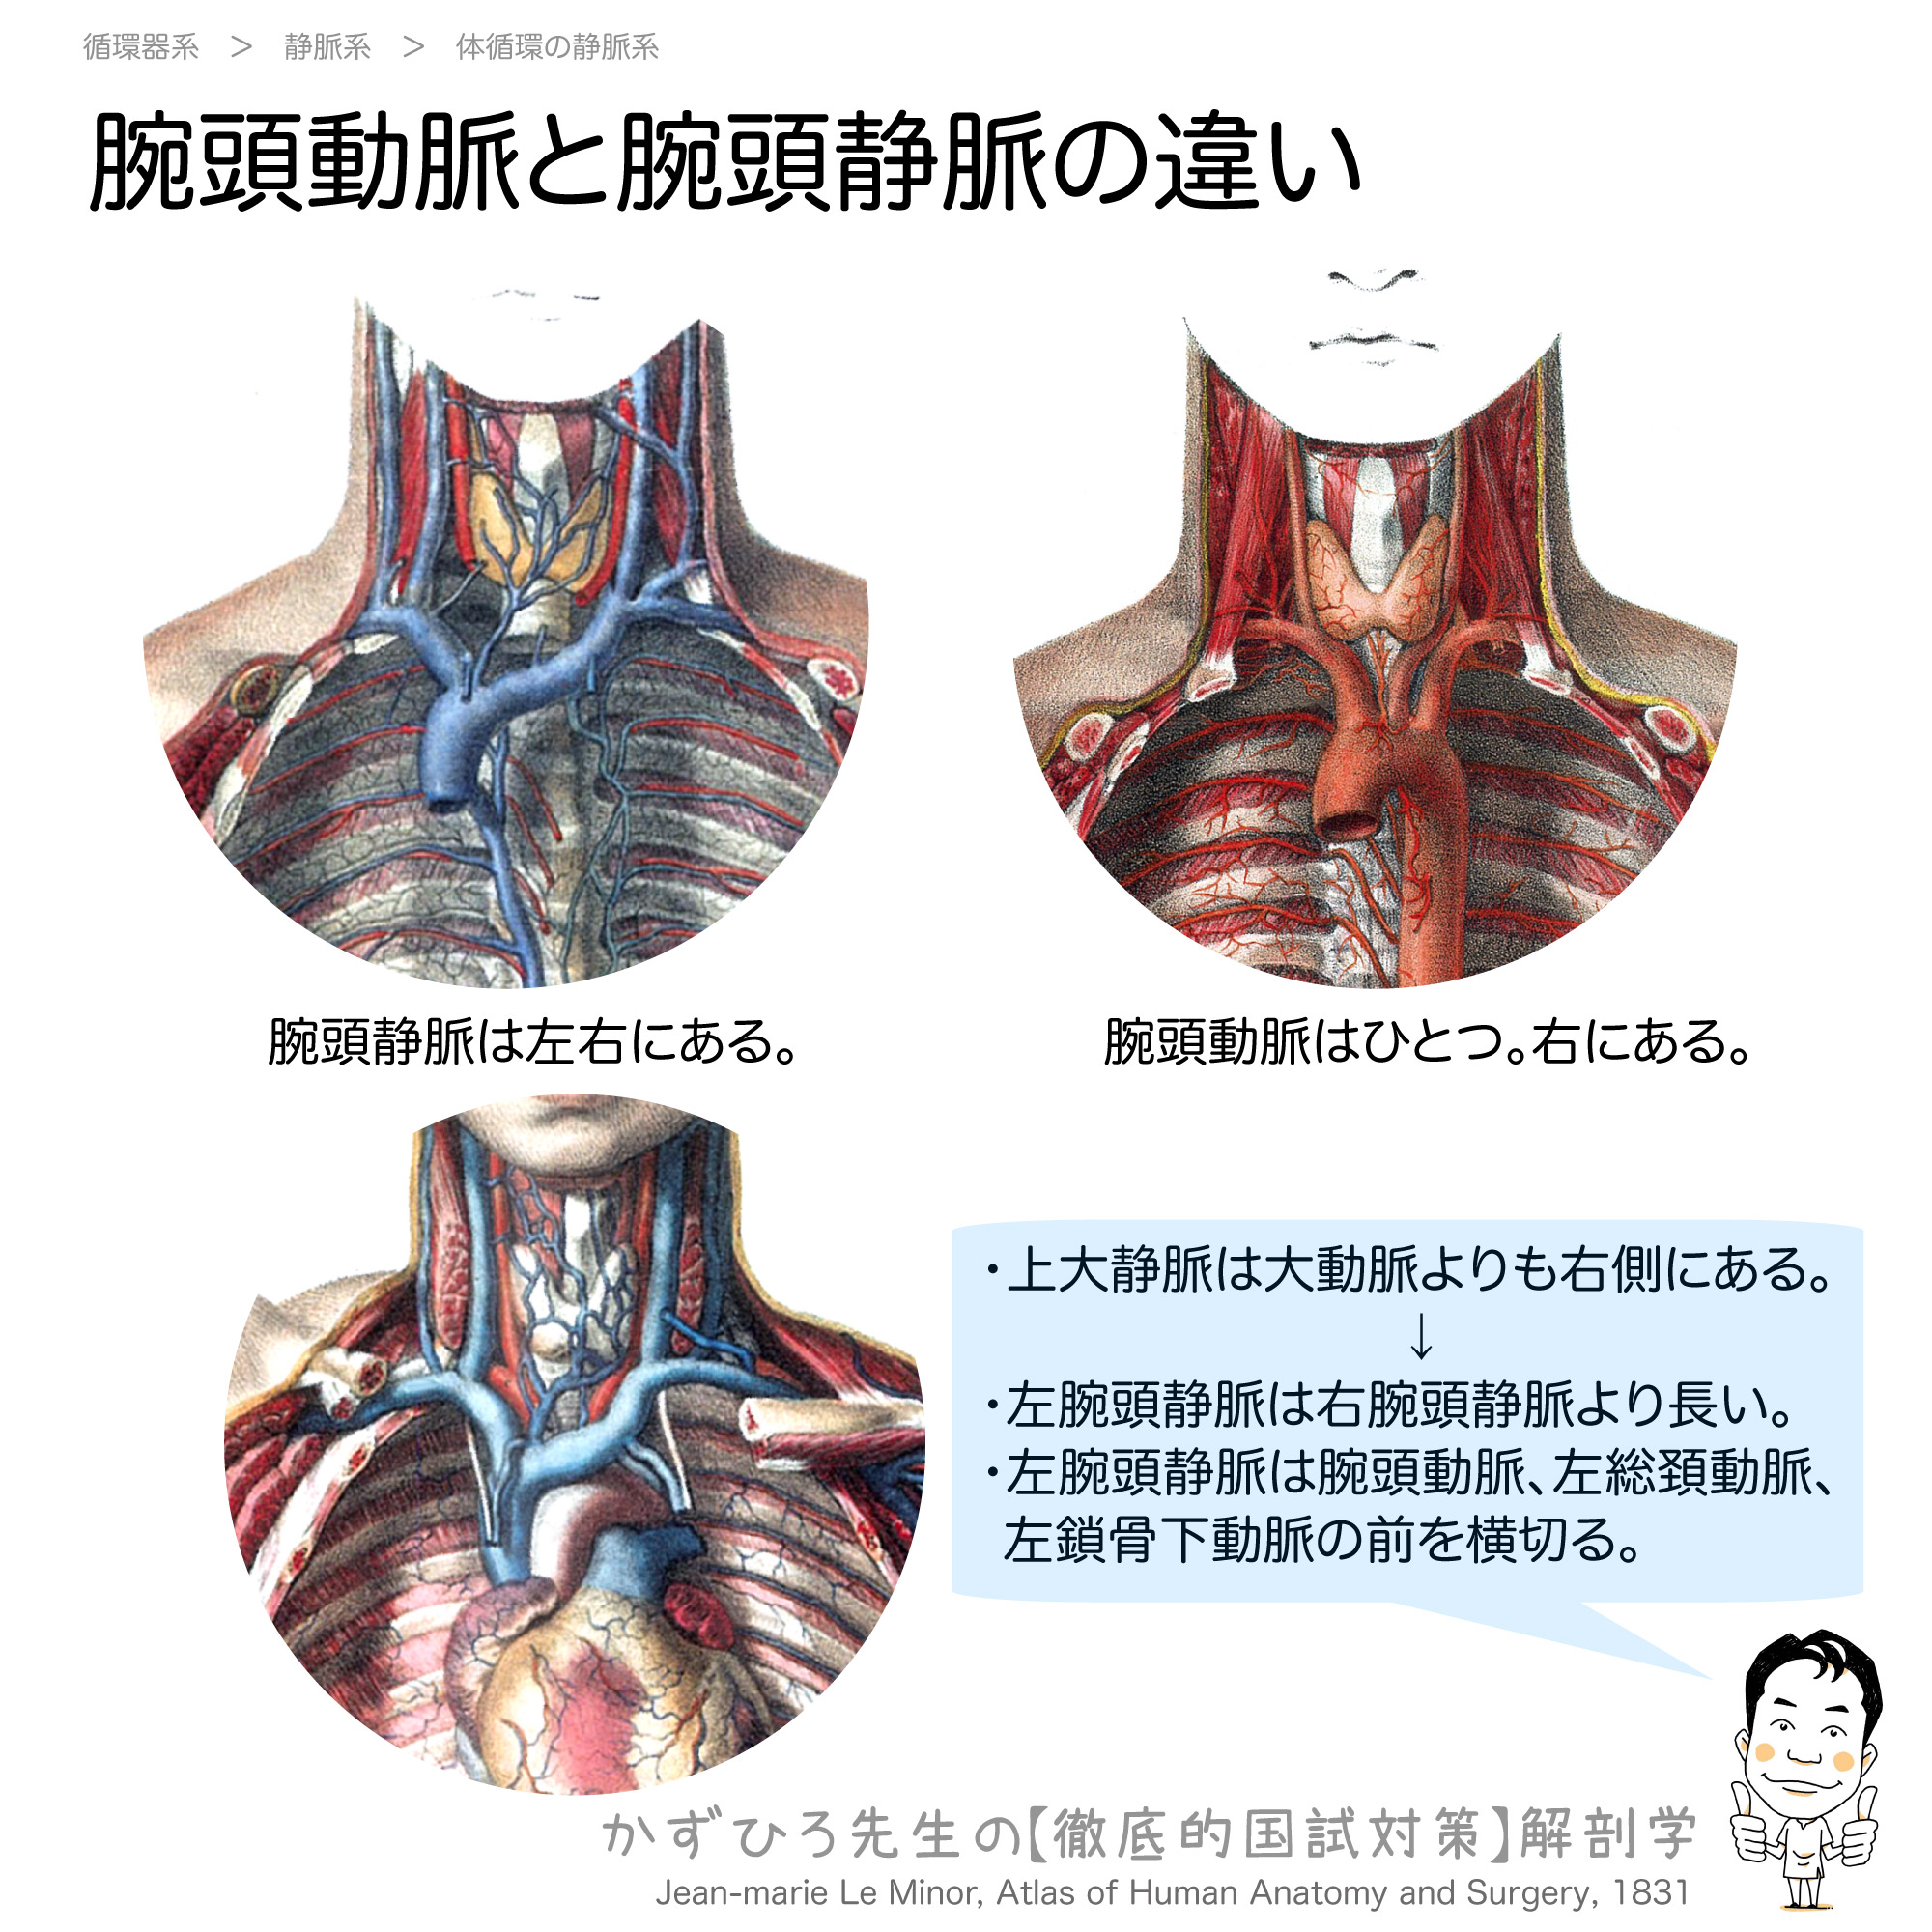 腕頭動脈と腕頭静脈の違い 徹底的解剖学